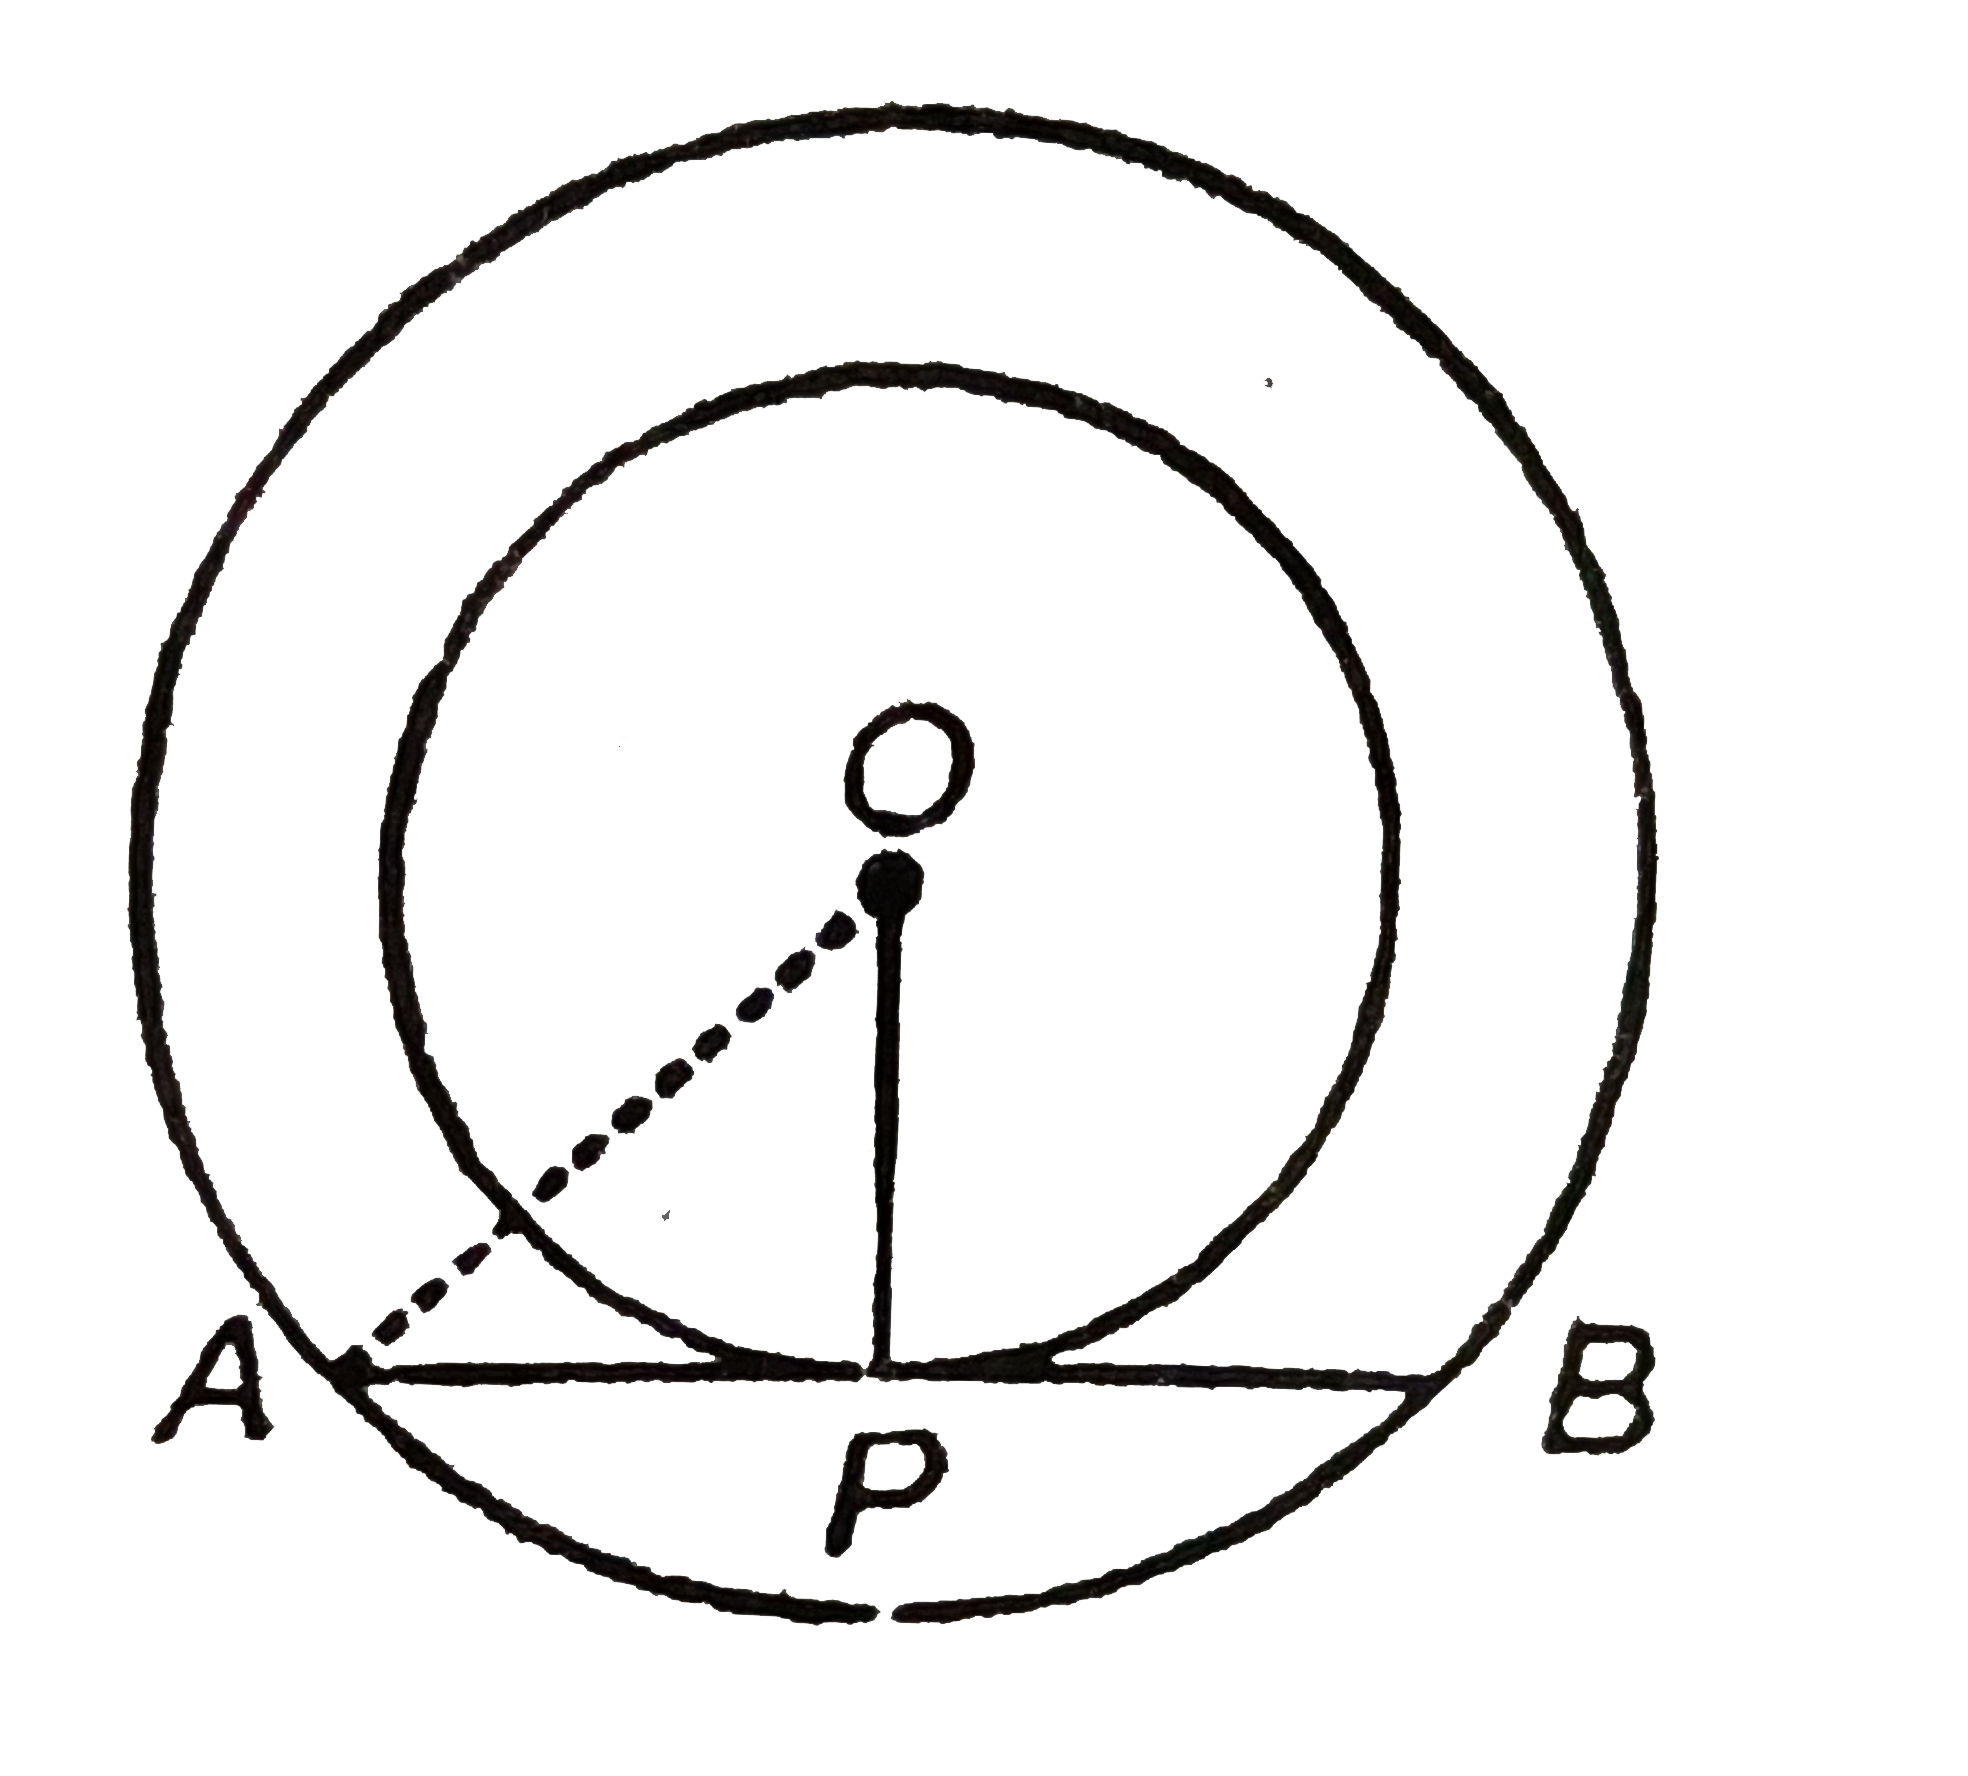 दिए गए चित्र में O दो संकेन्द्रिय वृतों, जिनकी त्रिज्या 3 cm और 5cm हैं का केंद्र हैं, AB बाह्म वृत्त की जीवा है जो अन्तः वृत्त को स्पर्श करती है| जीवा AB की लम्बाई है: